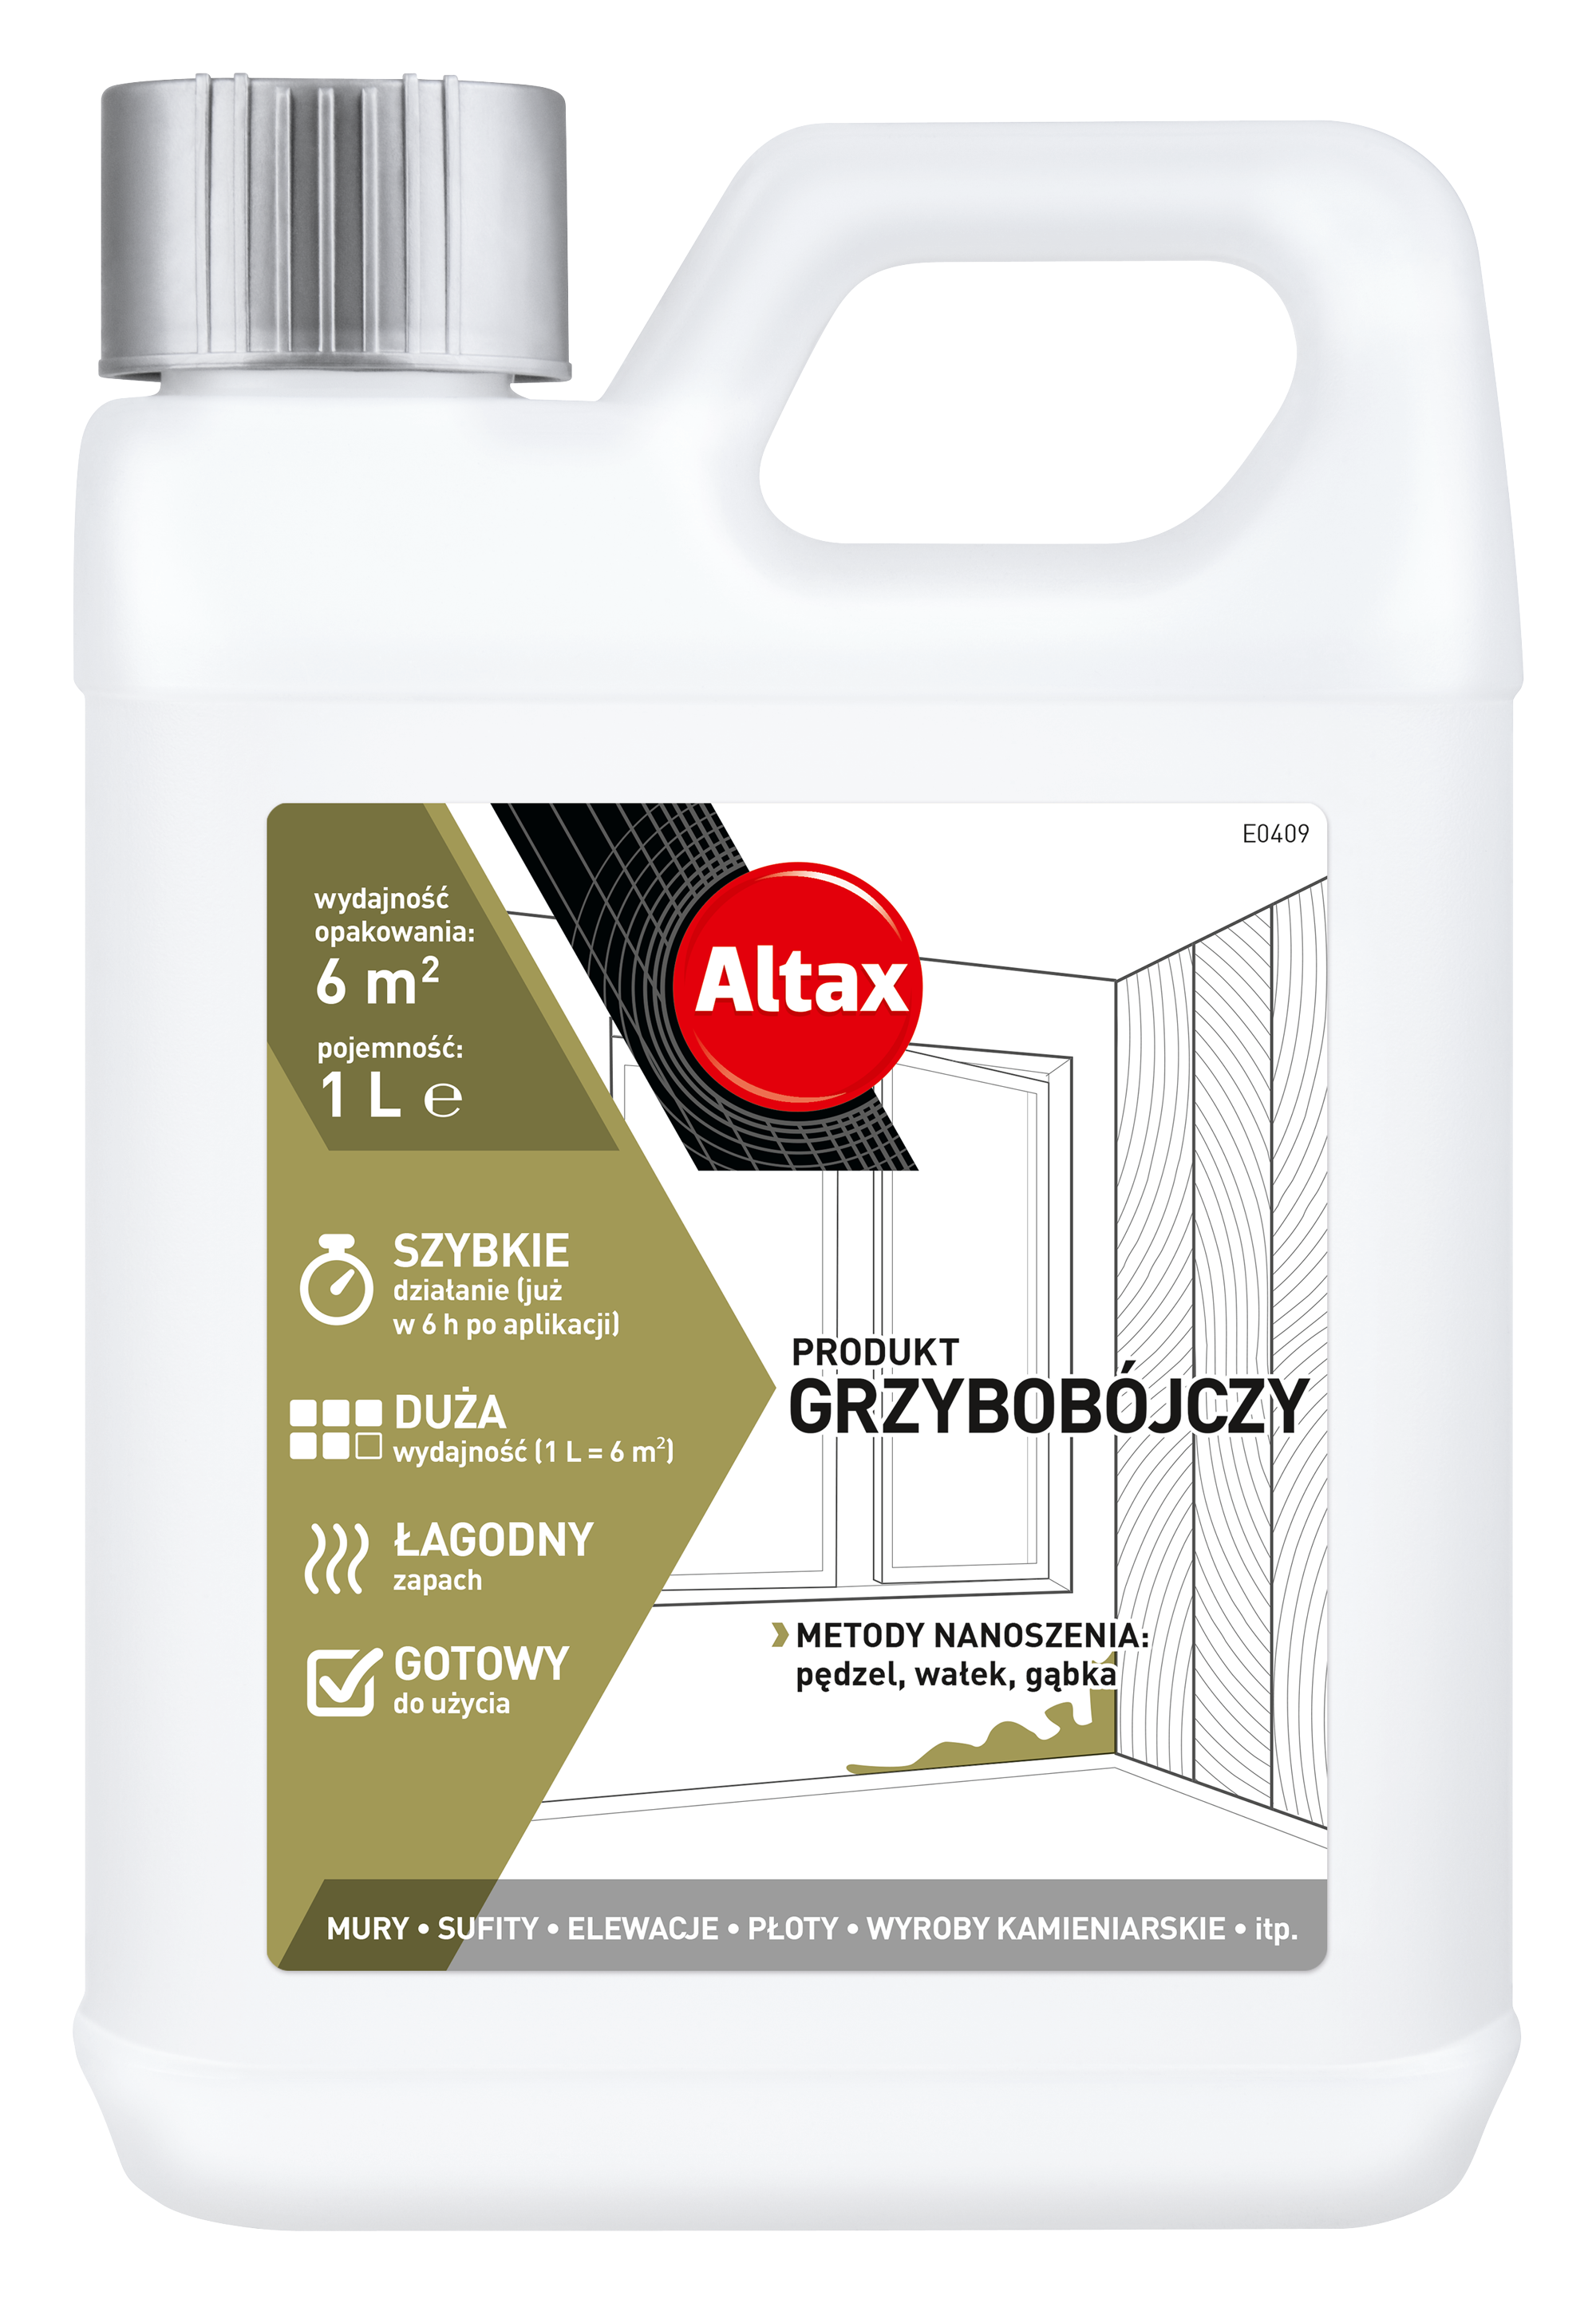 ALTAX-produkt-grzybobojczy-1L-wiz-08